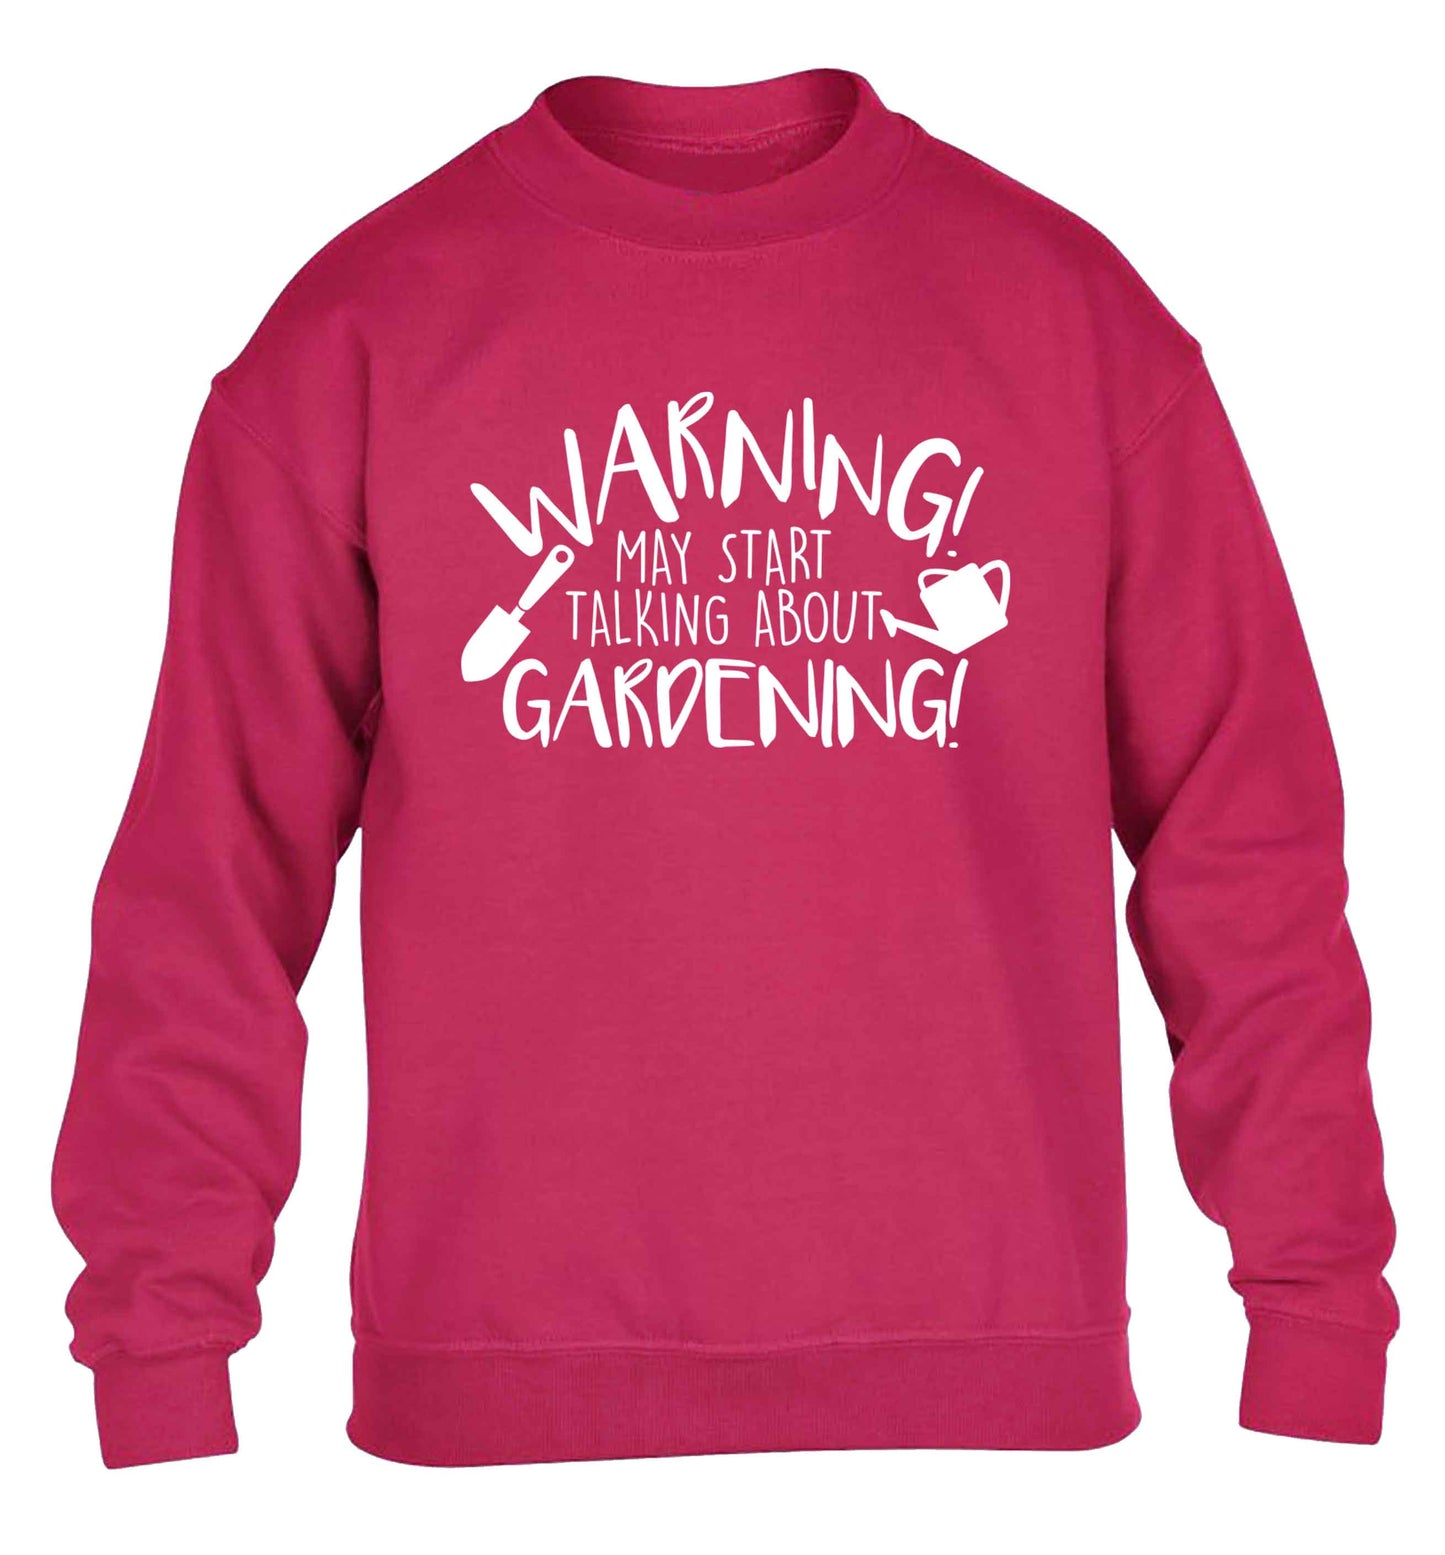 Warning may start talking about gardening children's pink sweater 12-13 Years